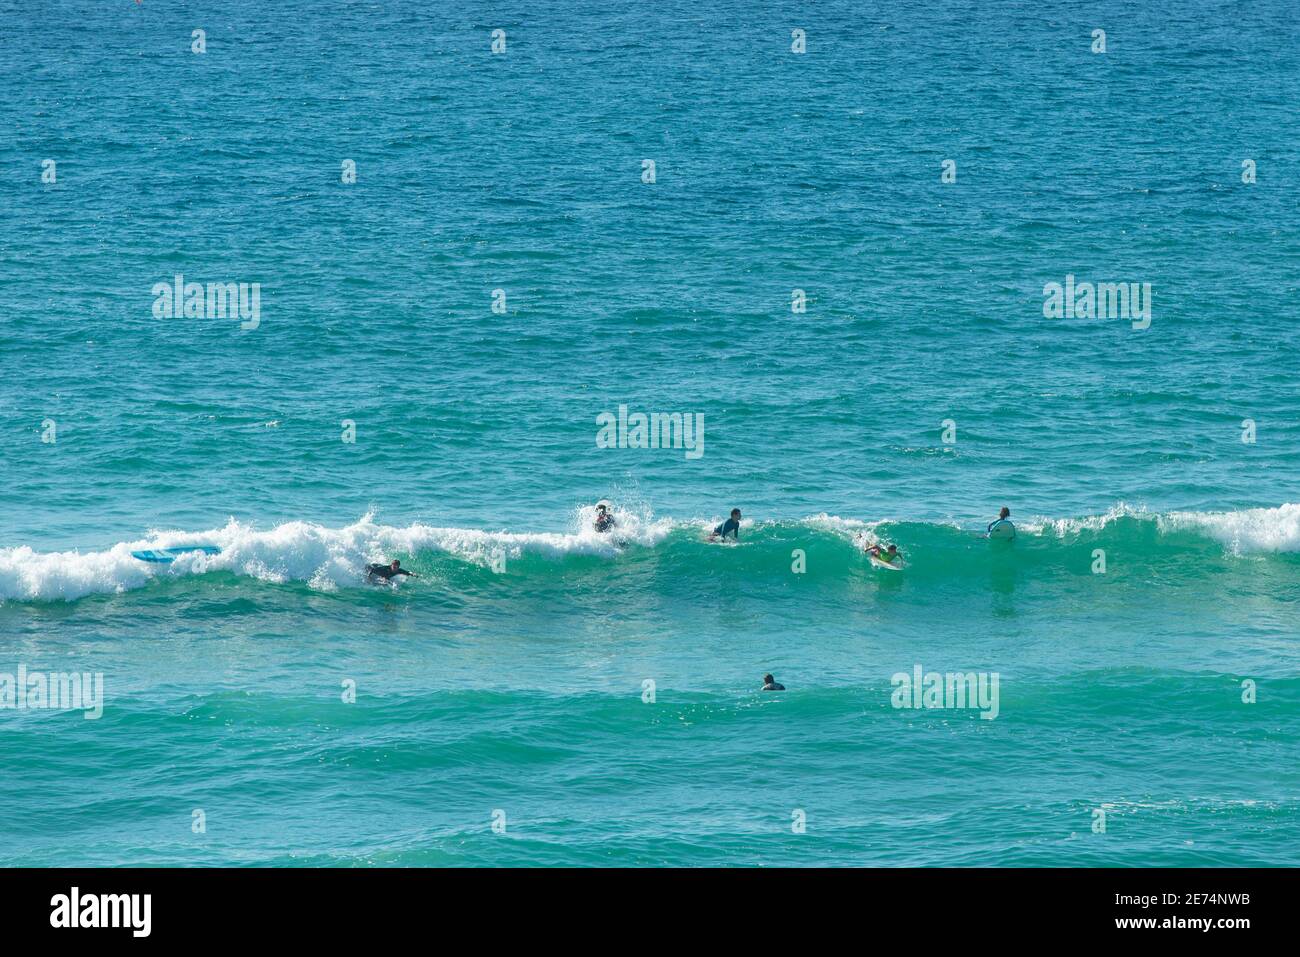 Les surfeurs surfent sur les vagues de l'océan Atlantique à Biscarrosse, Nouvelle-Aquitaine, France, Europe. Biscarrosse plage est un endroit de surf célèbre Banque D'Images